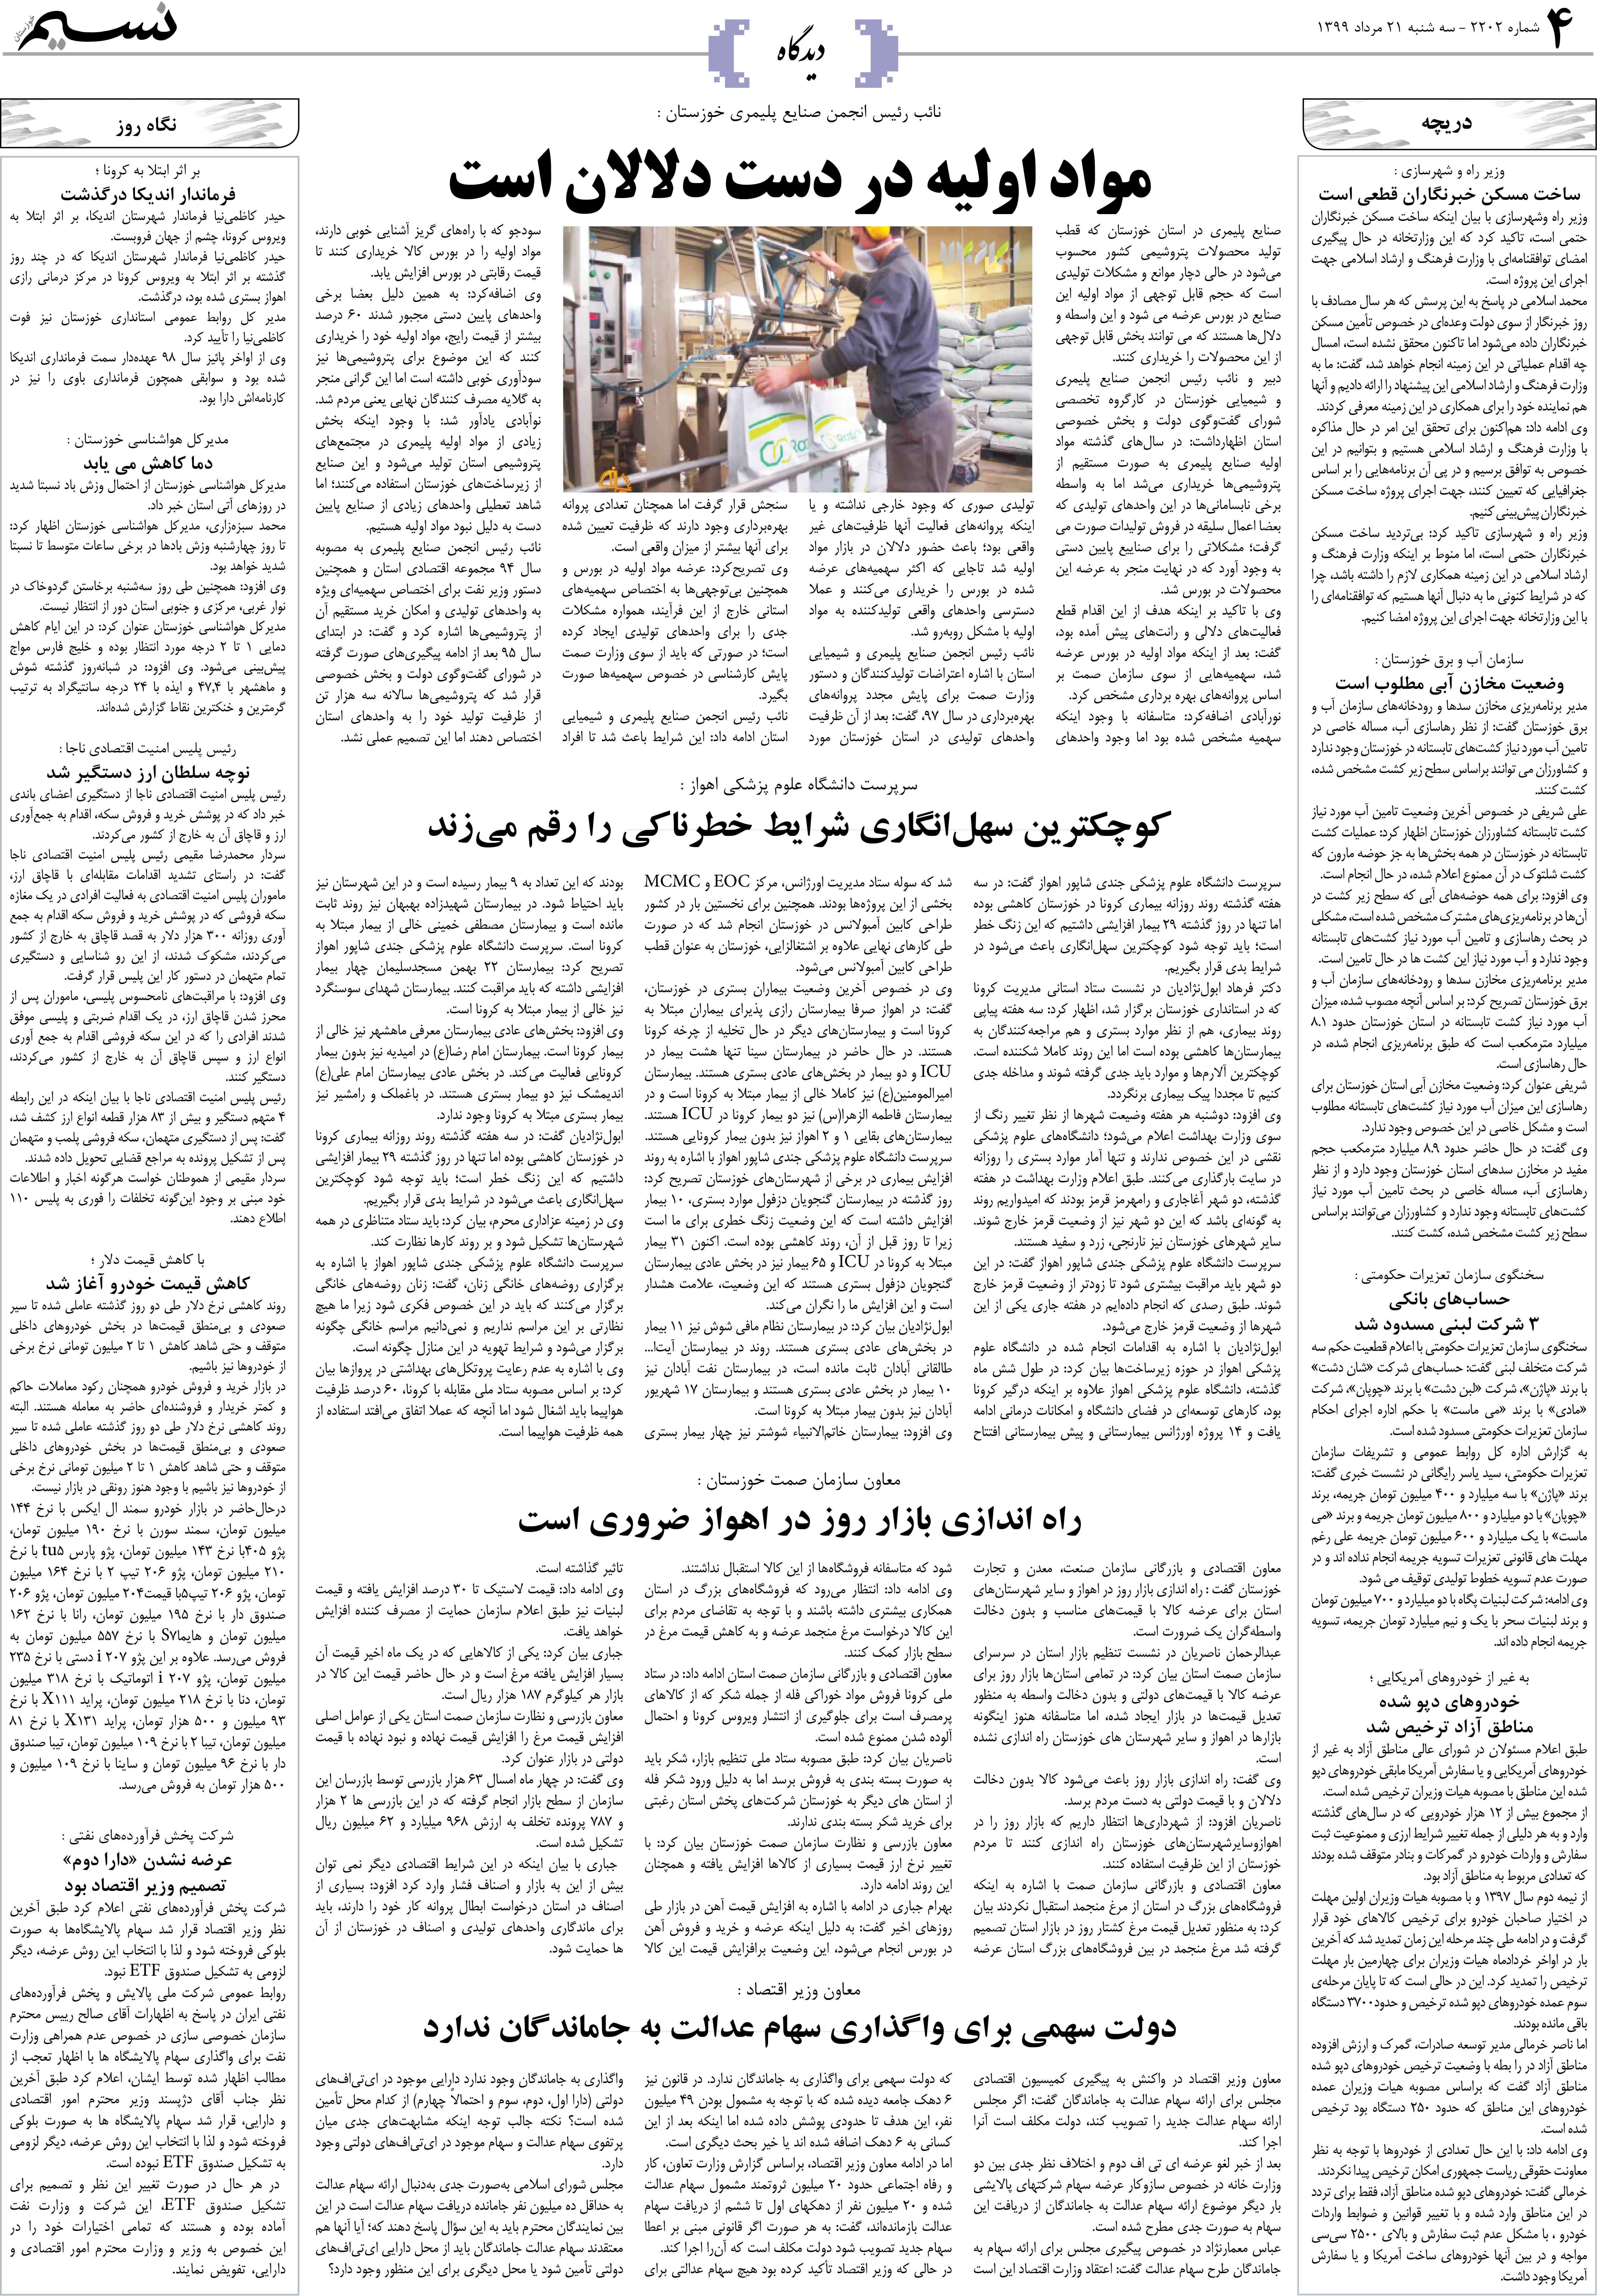 صفحه دیدگاه روزنامه نسیم شماره 2202